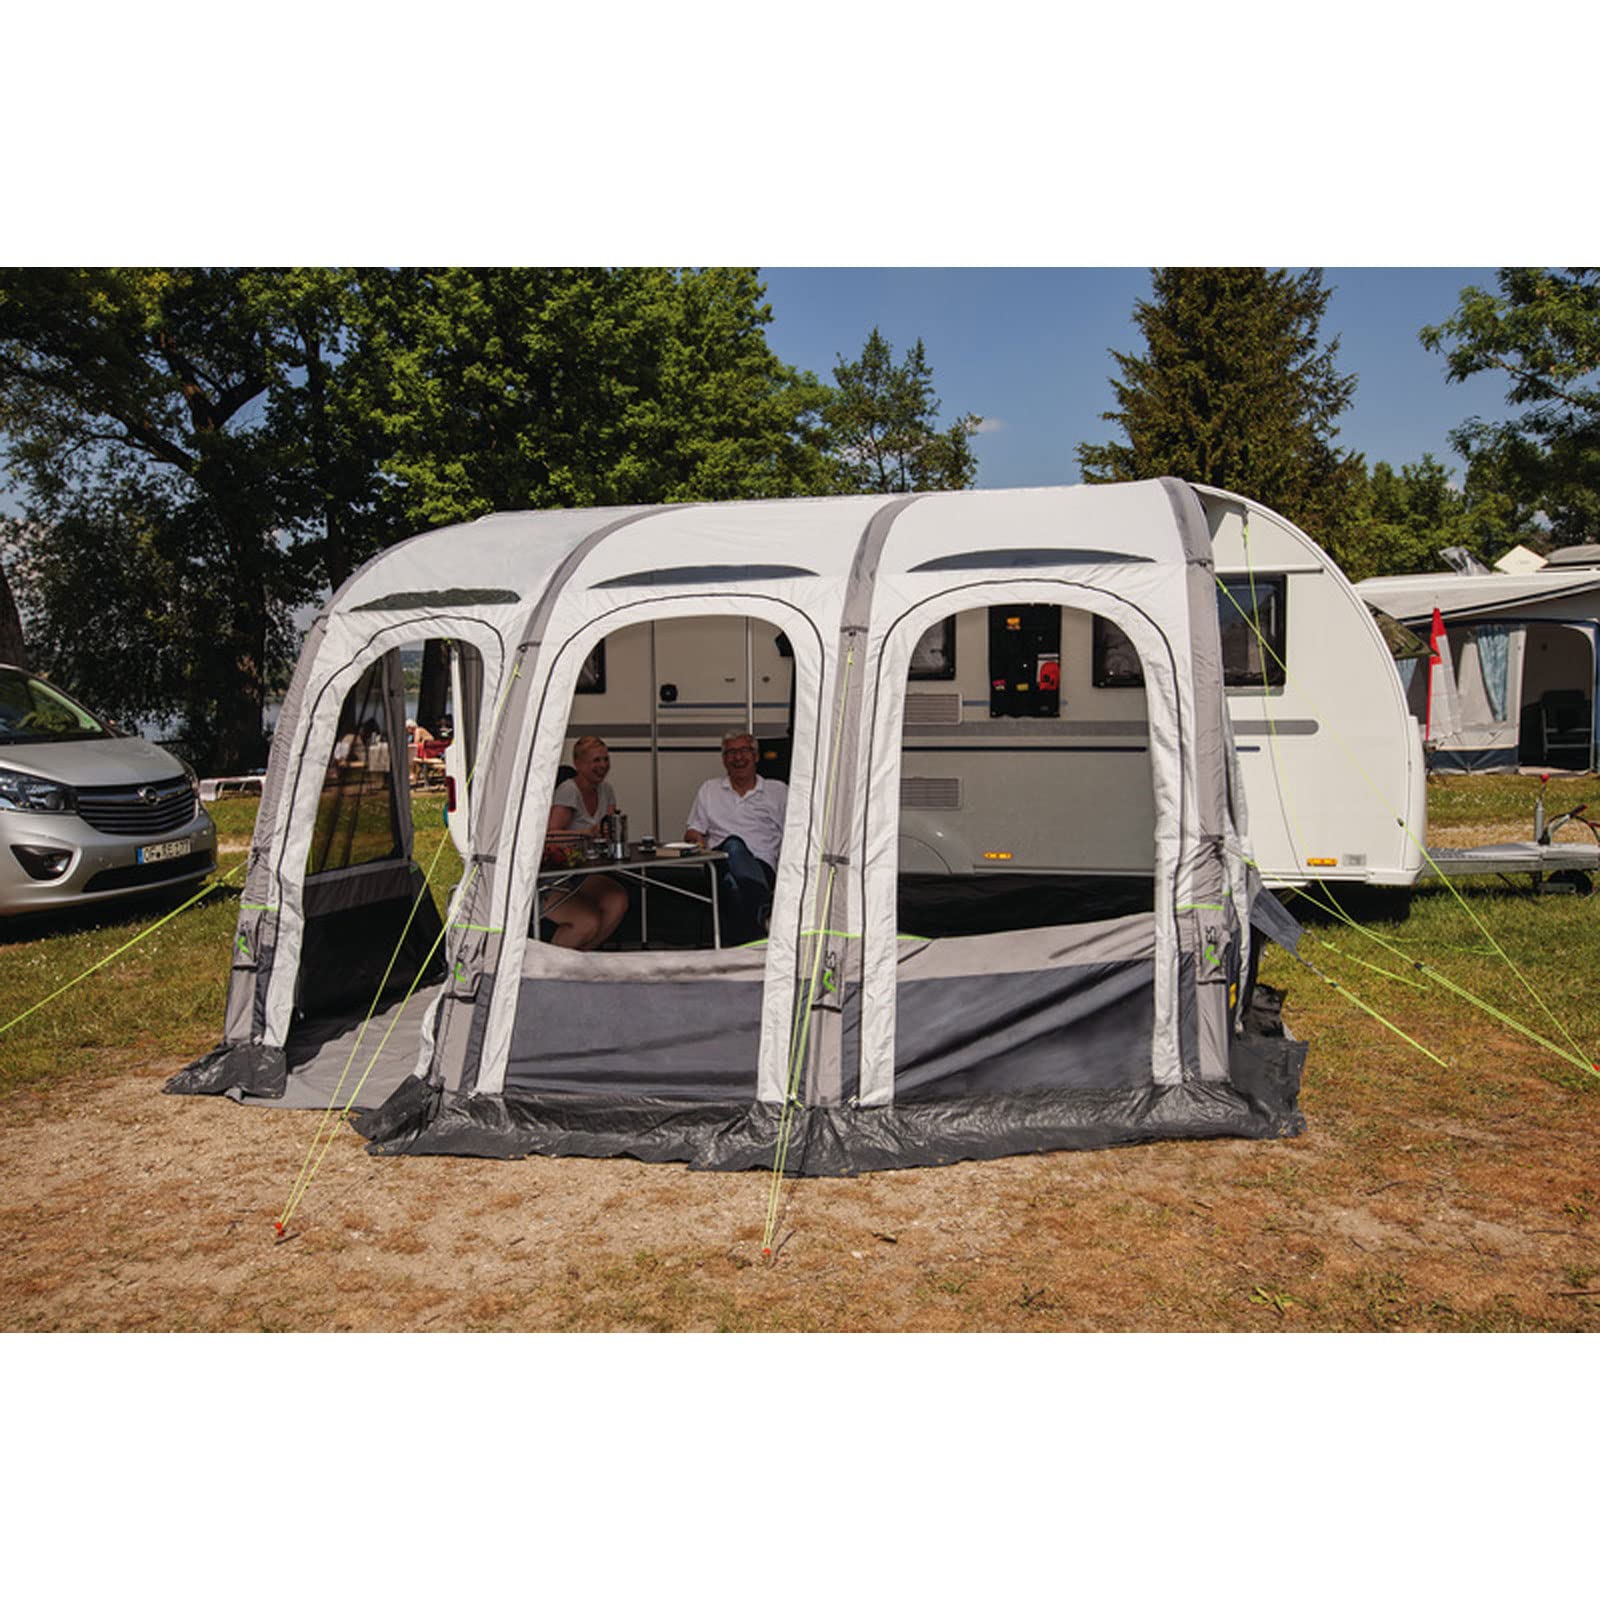 Reimo Tent Technology Caravanvorzelt Marina Air 4,90m Luftvorzelt für Wohnwagen, Wohnmobil, Campingbus von Reimo Tent Technology